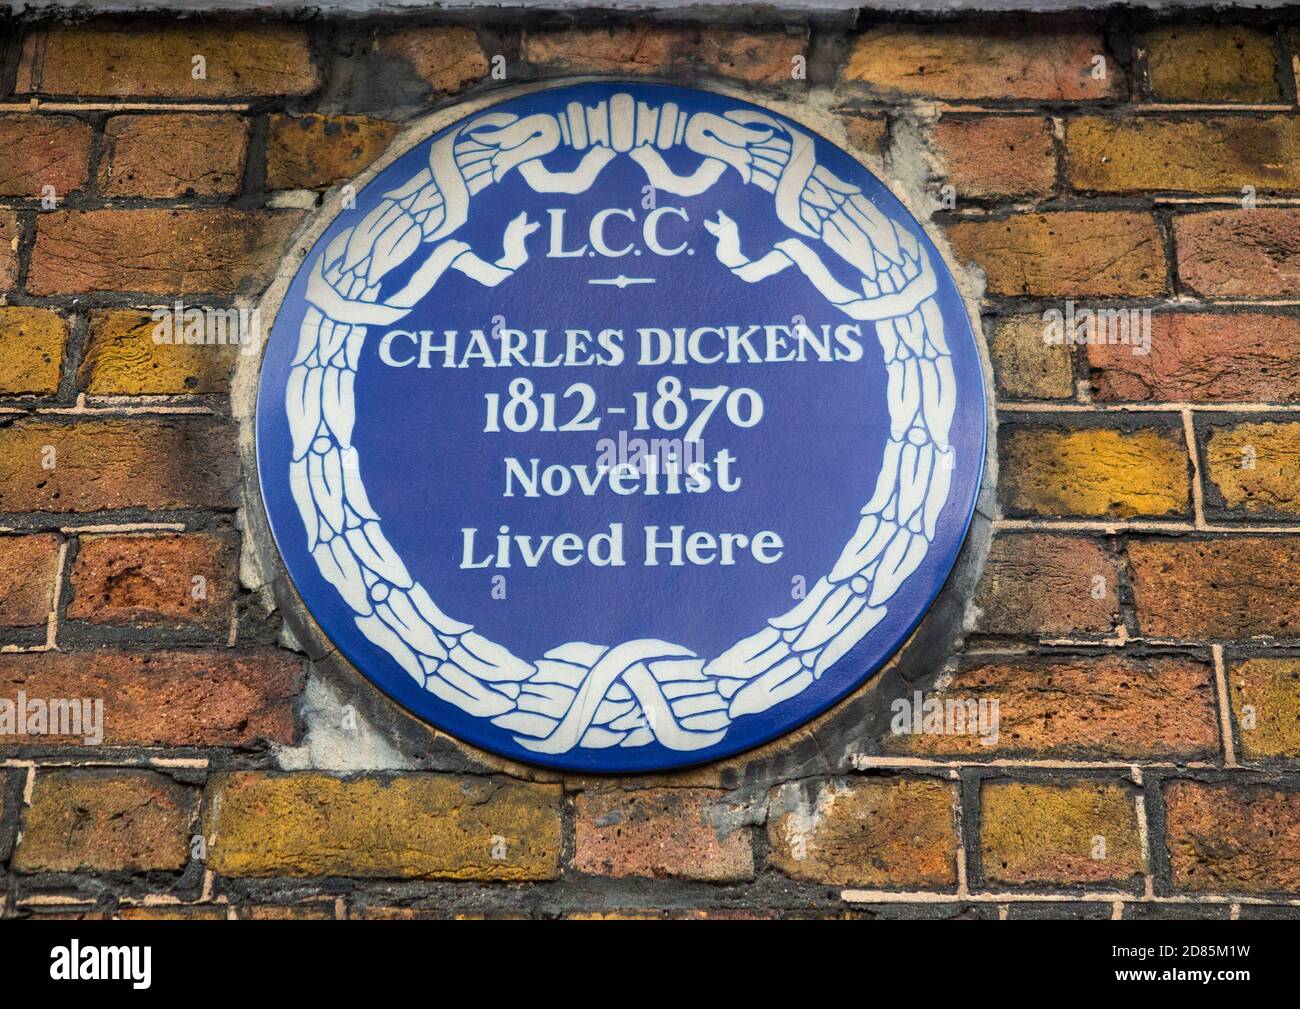 Le musée Charles Dickens et la maison de ville géorgienne où le célèbre auteur victorien a vécu pendant près de 3 ans, dans la rue Doughty. Londres. ROYAUME-UNI (122) Banque D'Images